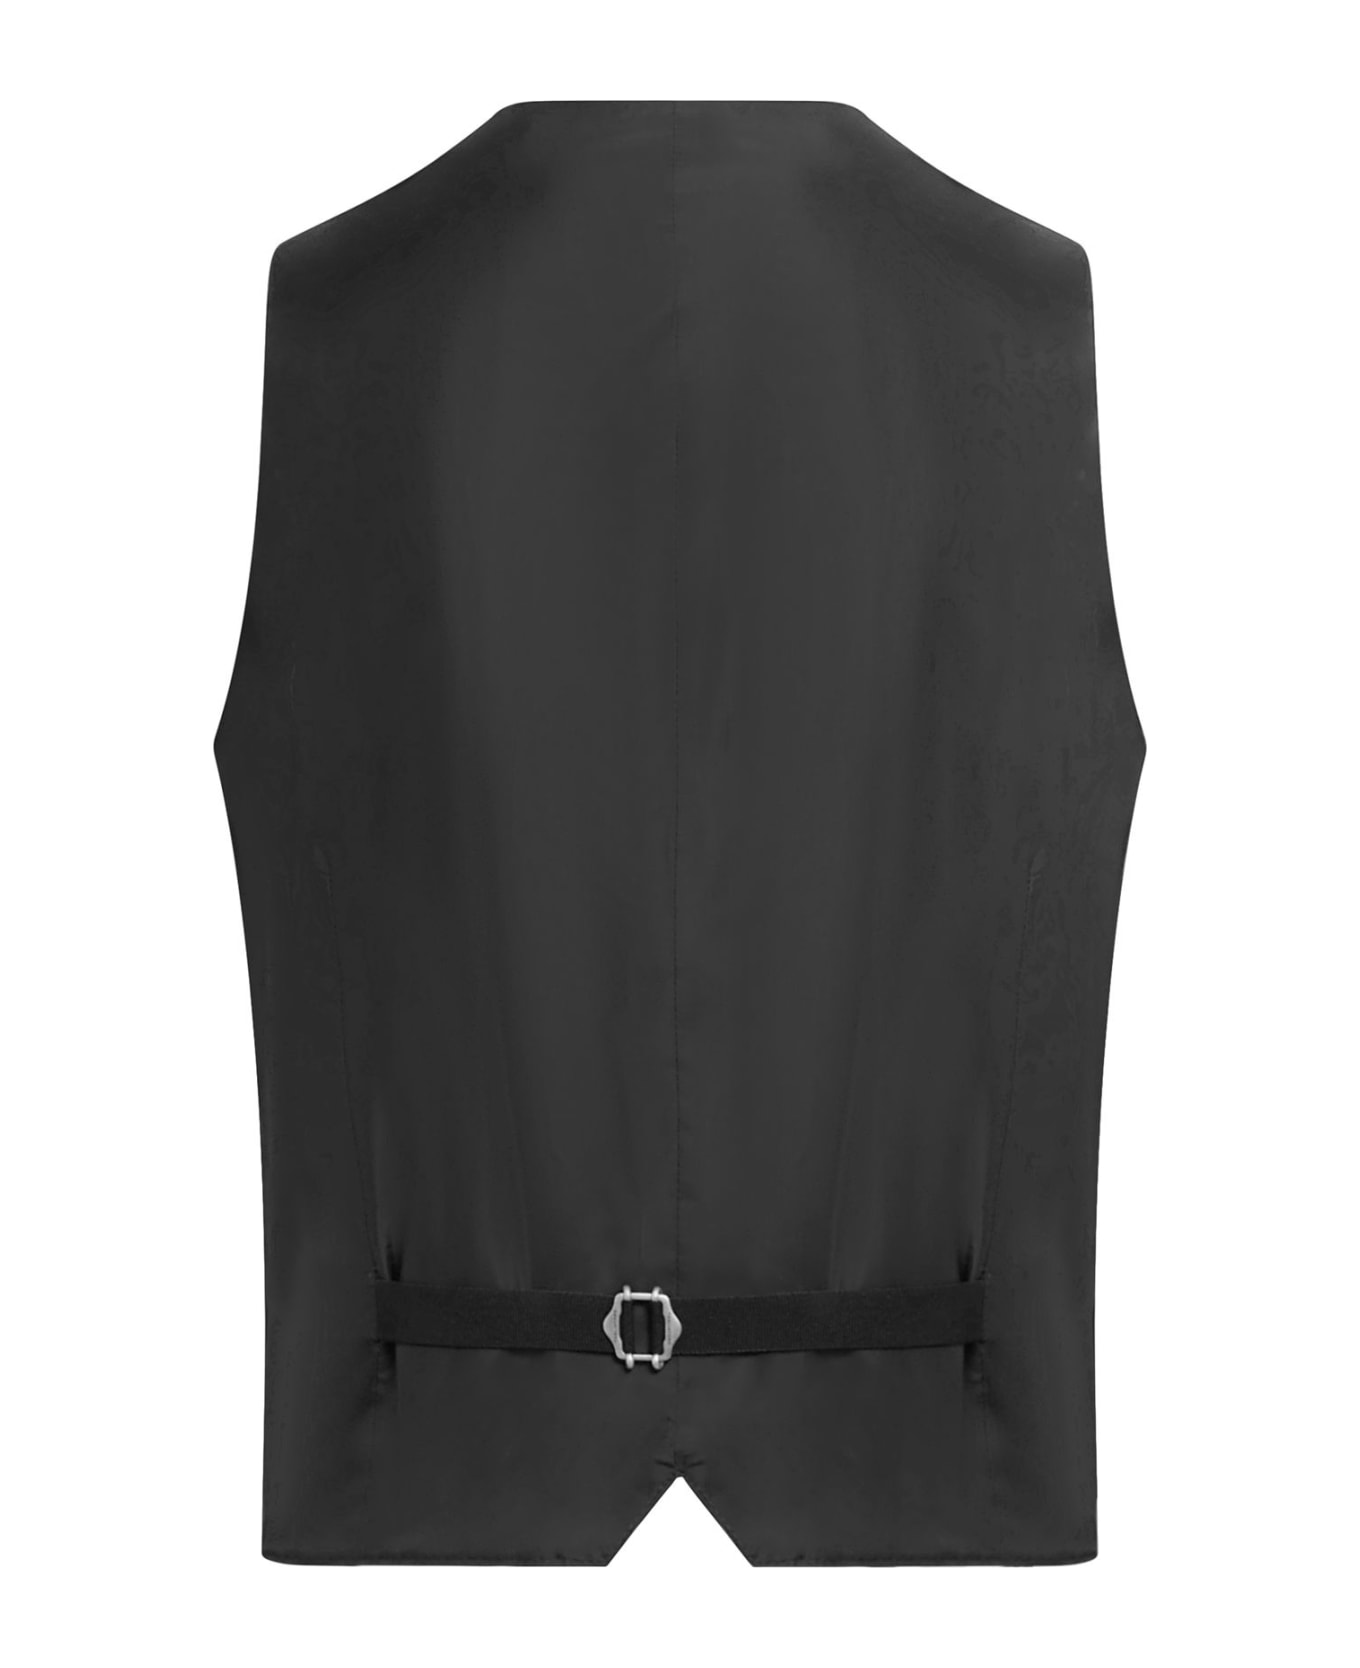 Tagliatore Suit+gilet - Black スーツ